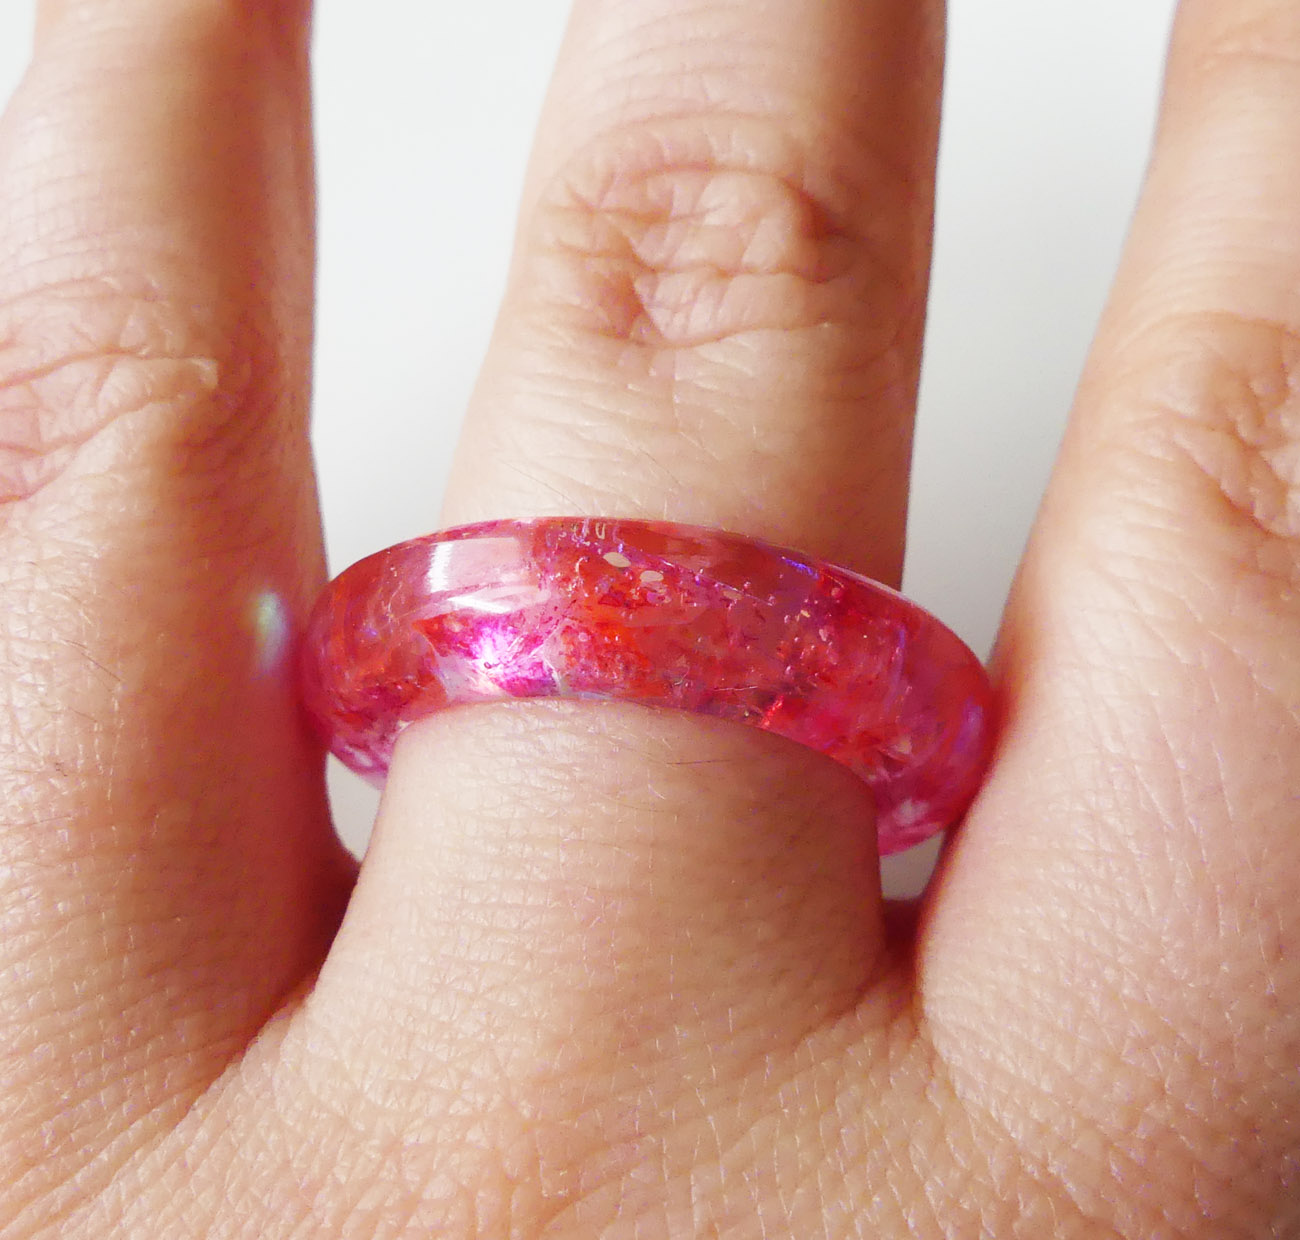 Živicový prsteň s červeno-ružovými holografickými trblietkami